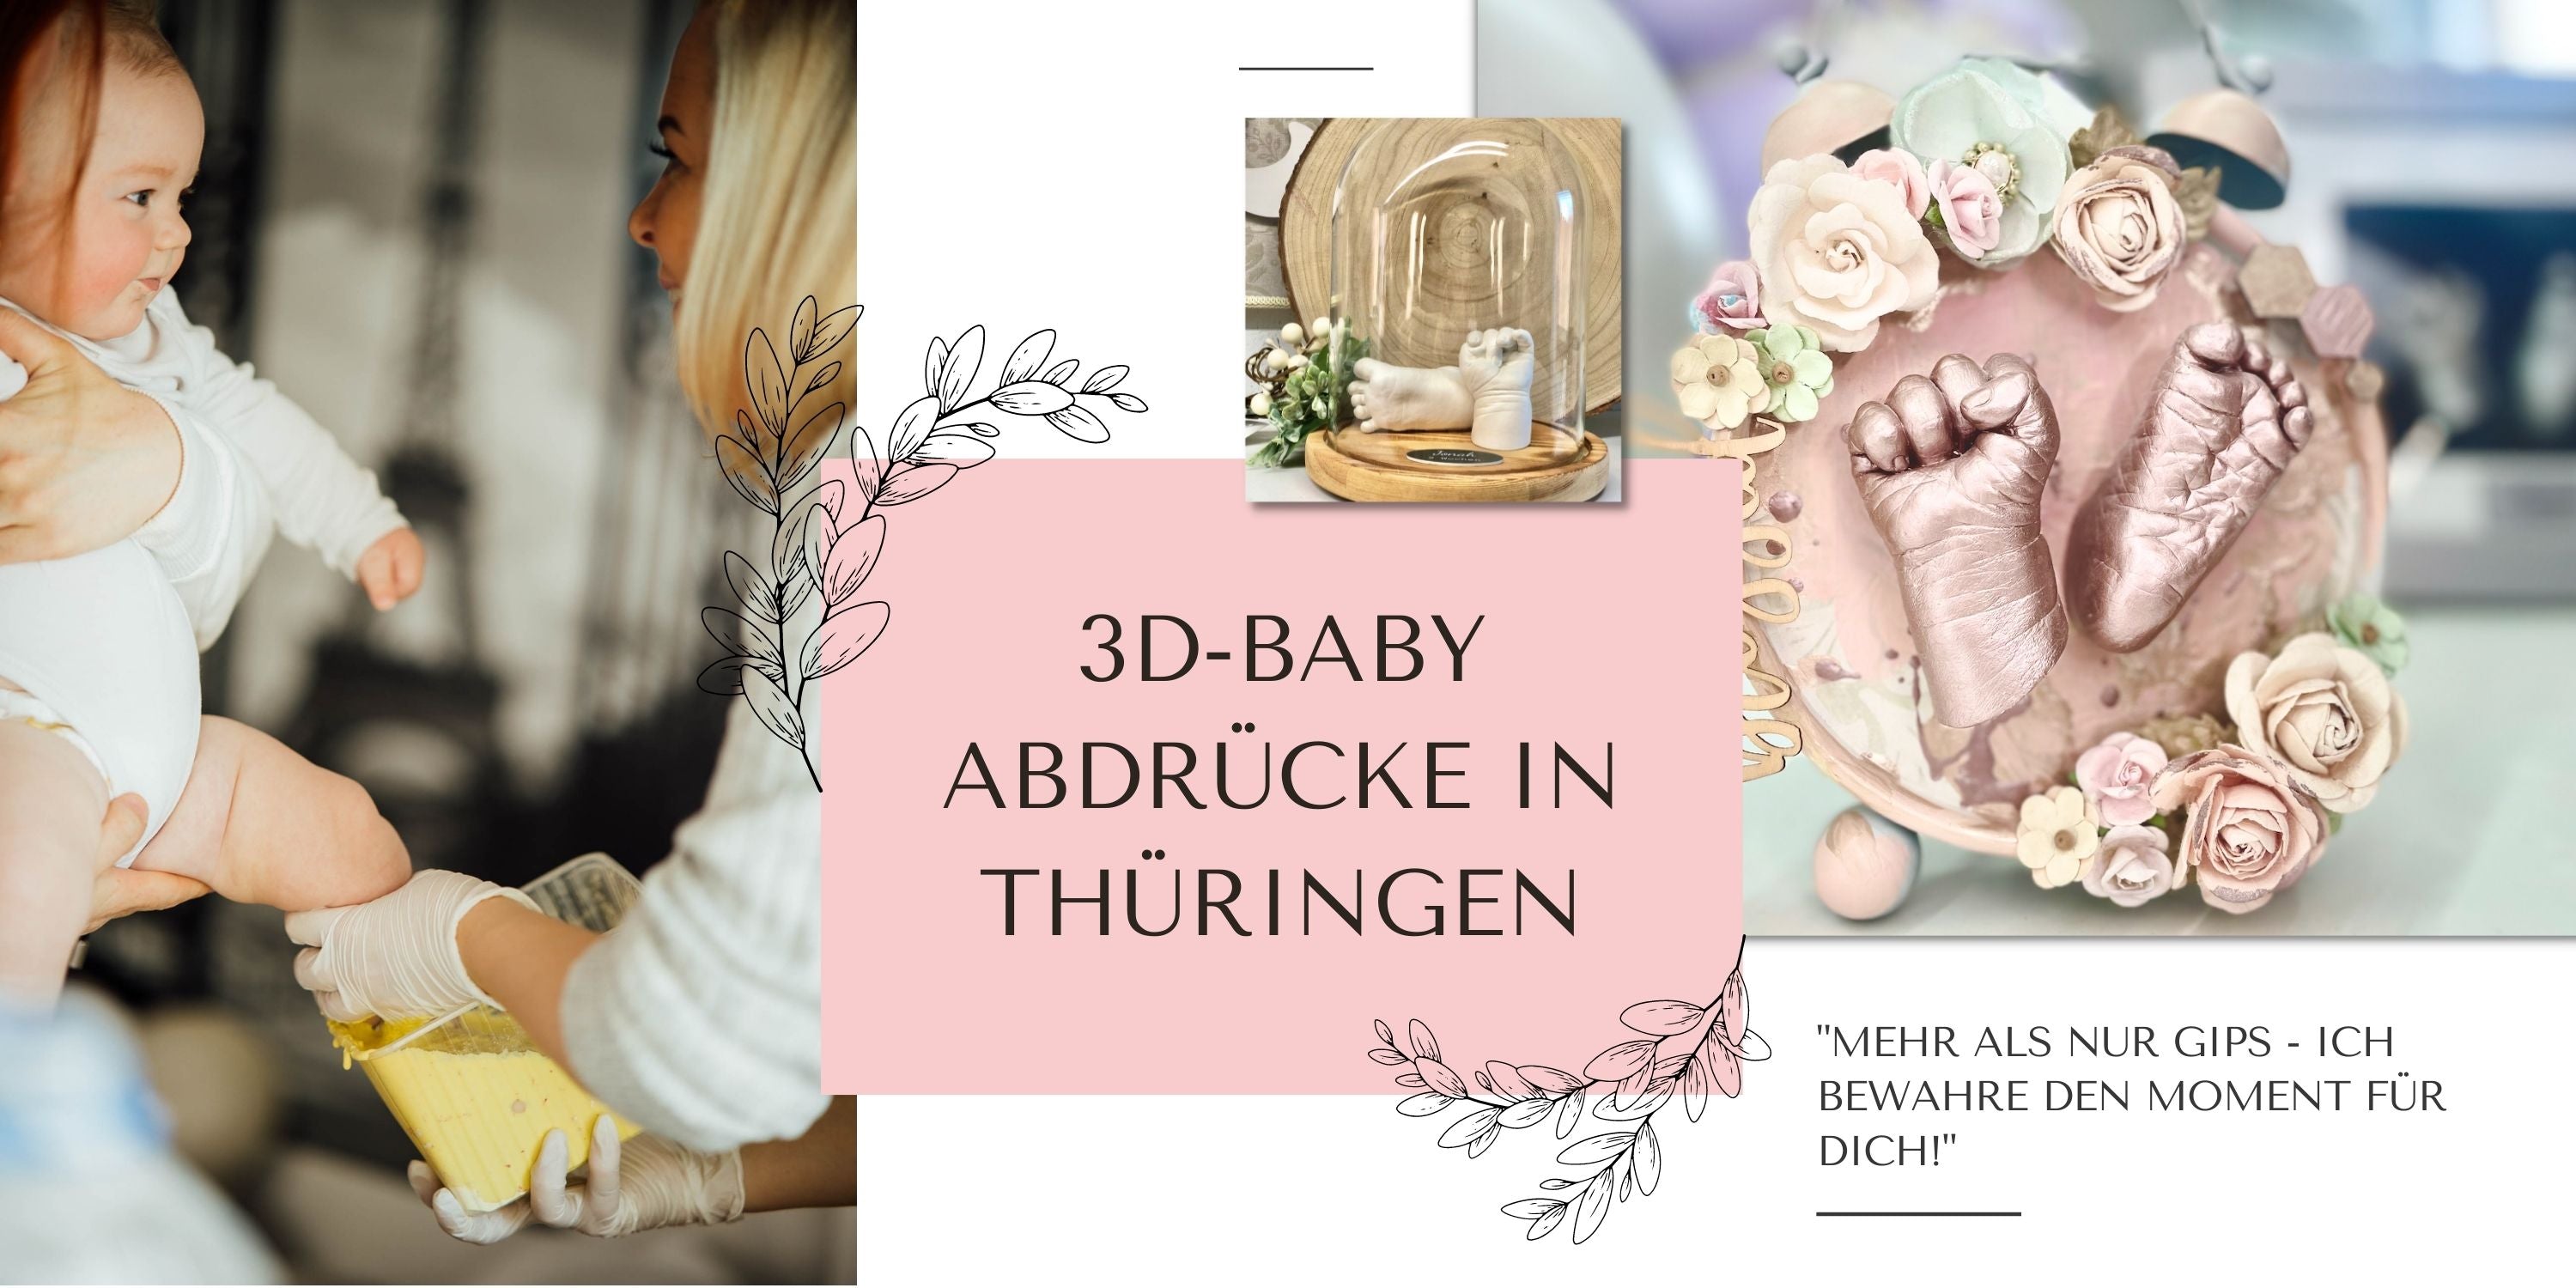 3D Baby Abdruck selbermachen oder doch lieber professionell im Atelier bie Künstlerin Julia Schulze in Erfurt, Thüringen? Egal wie, wichtig für frisch gebackene Eltern ist doch, dass der Moment bewahr ist. Gestalterisch wird alles individuell angefertigt.